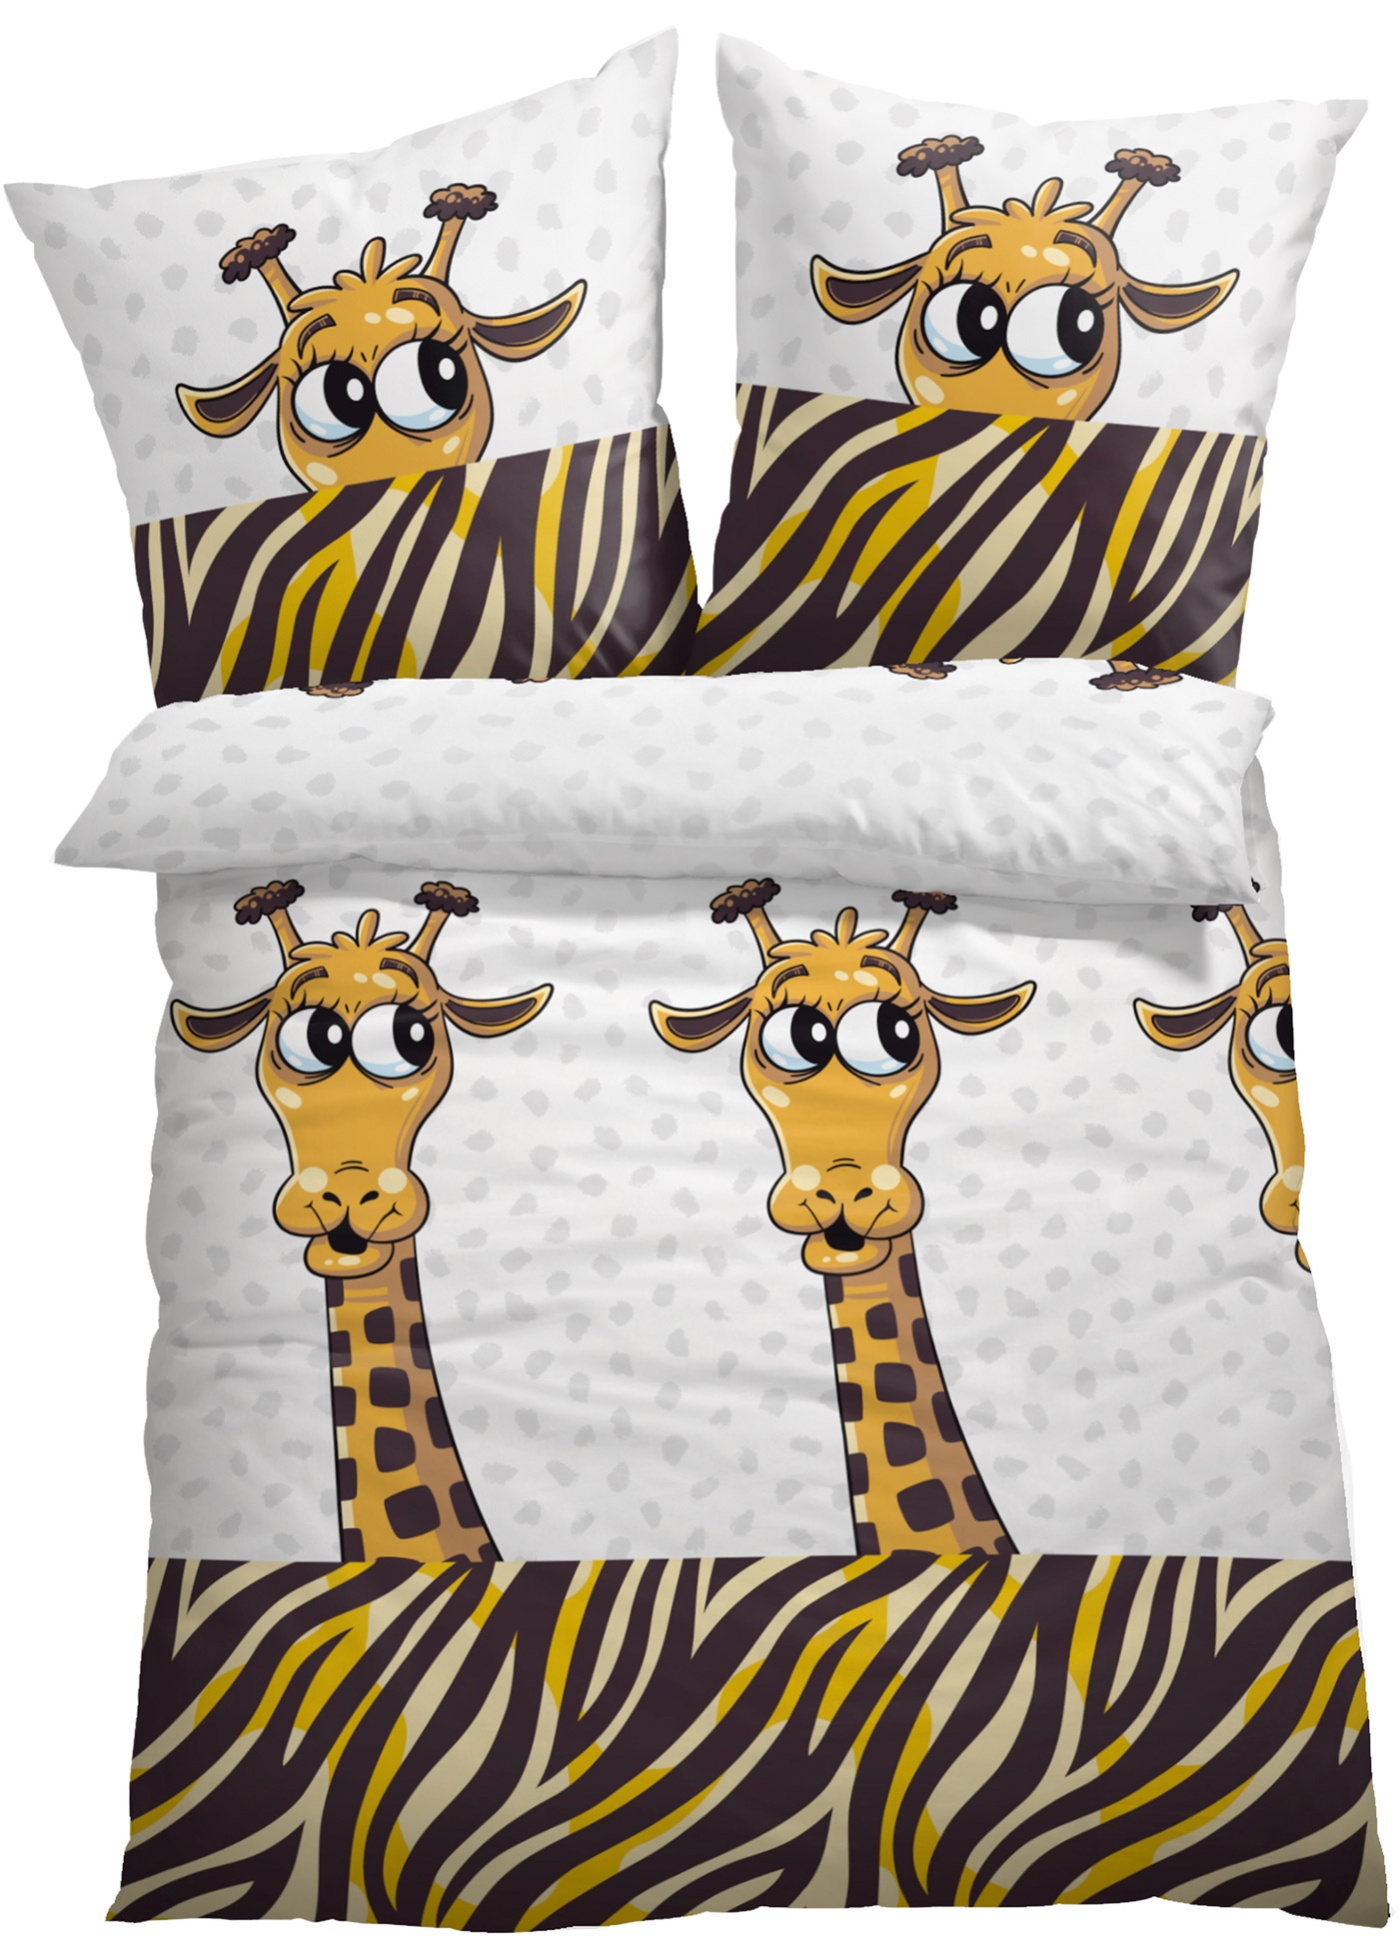 Posteľná bielizeň so žirafami